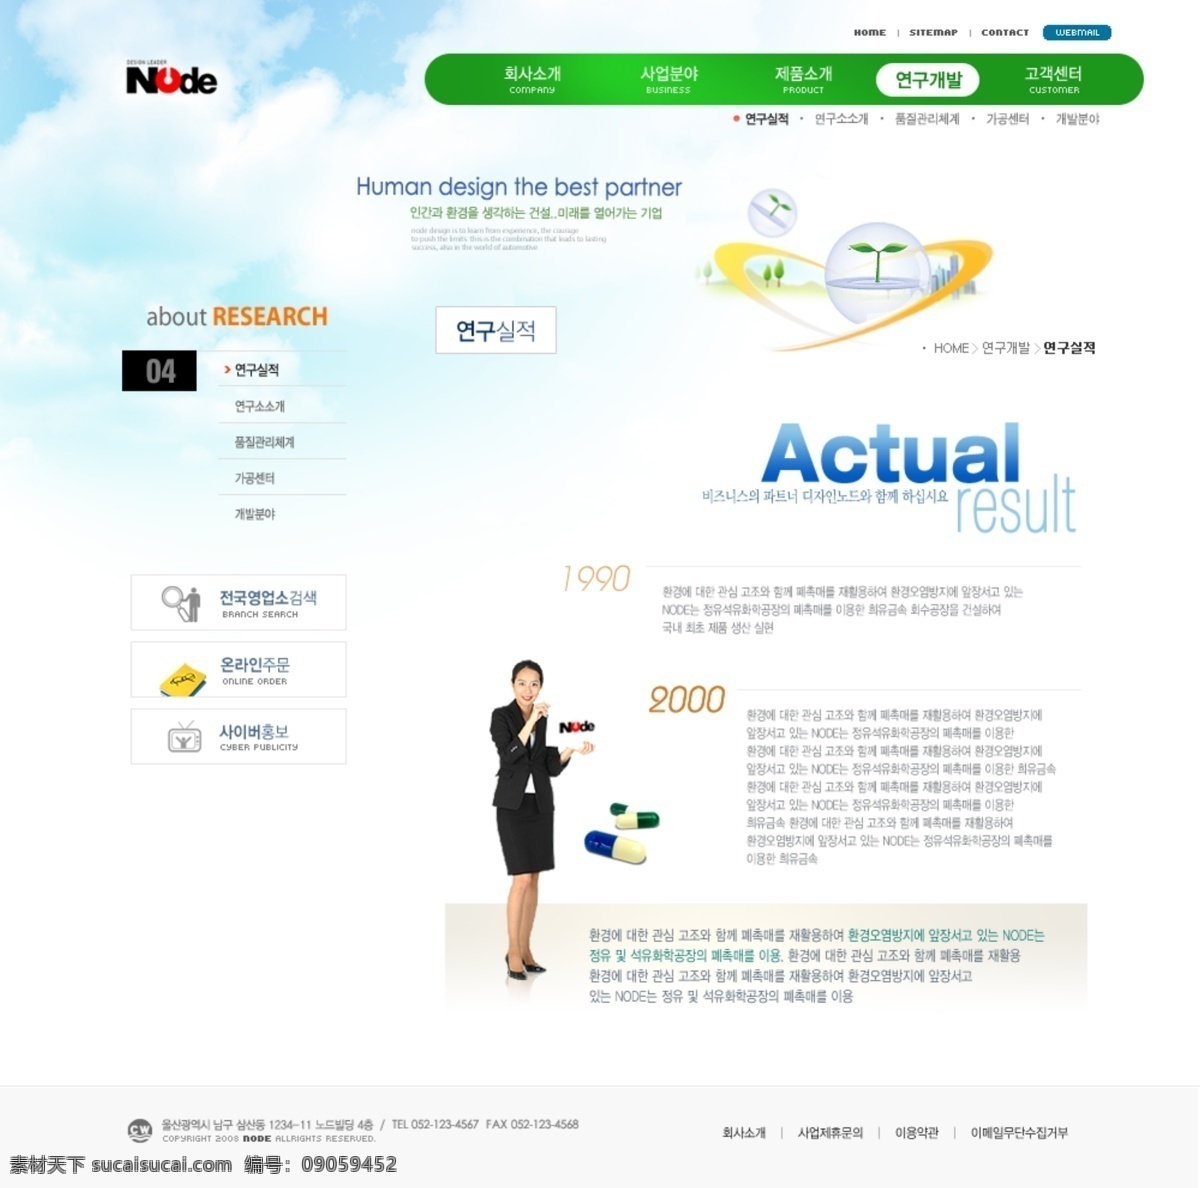 绿色 网页模板 完整 套装 韩国模板 绿色网页模板 源文件库 完整套装 网页素材